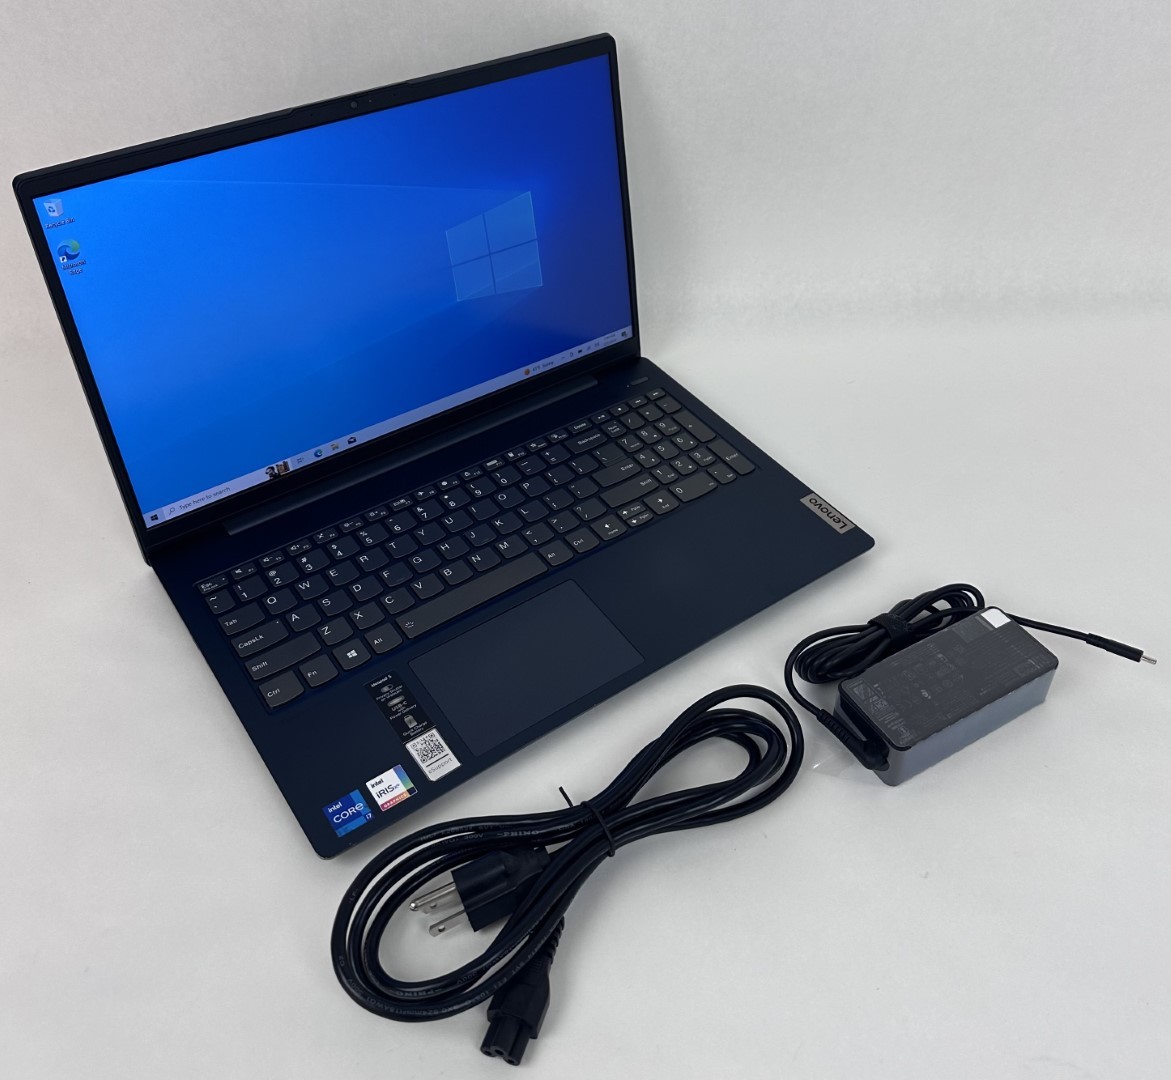 Lenovo IdeaPad 5 15ITL05 15.6" FHD Touch i5-1165G7 12GB 512GB SSD W10H Blue